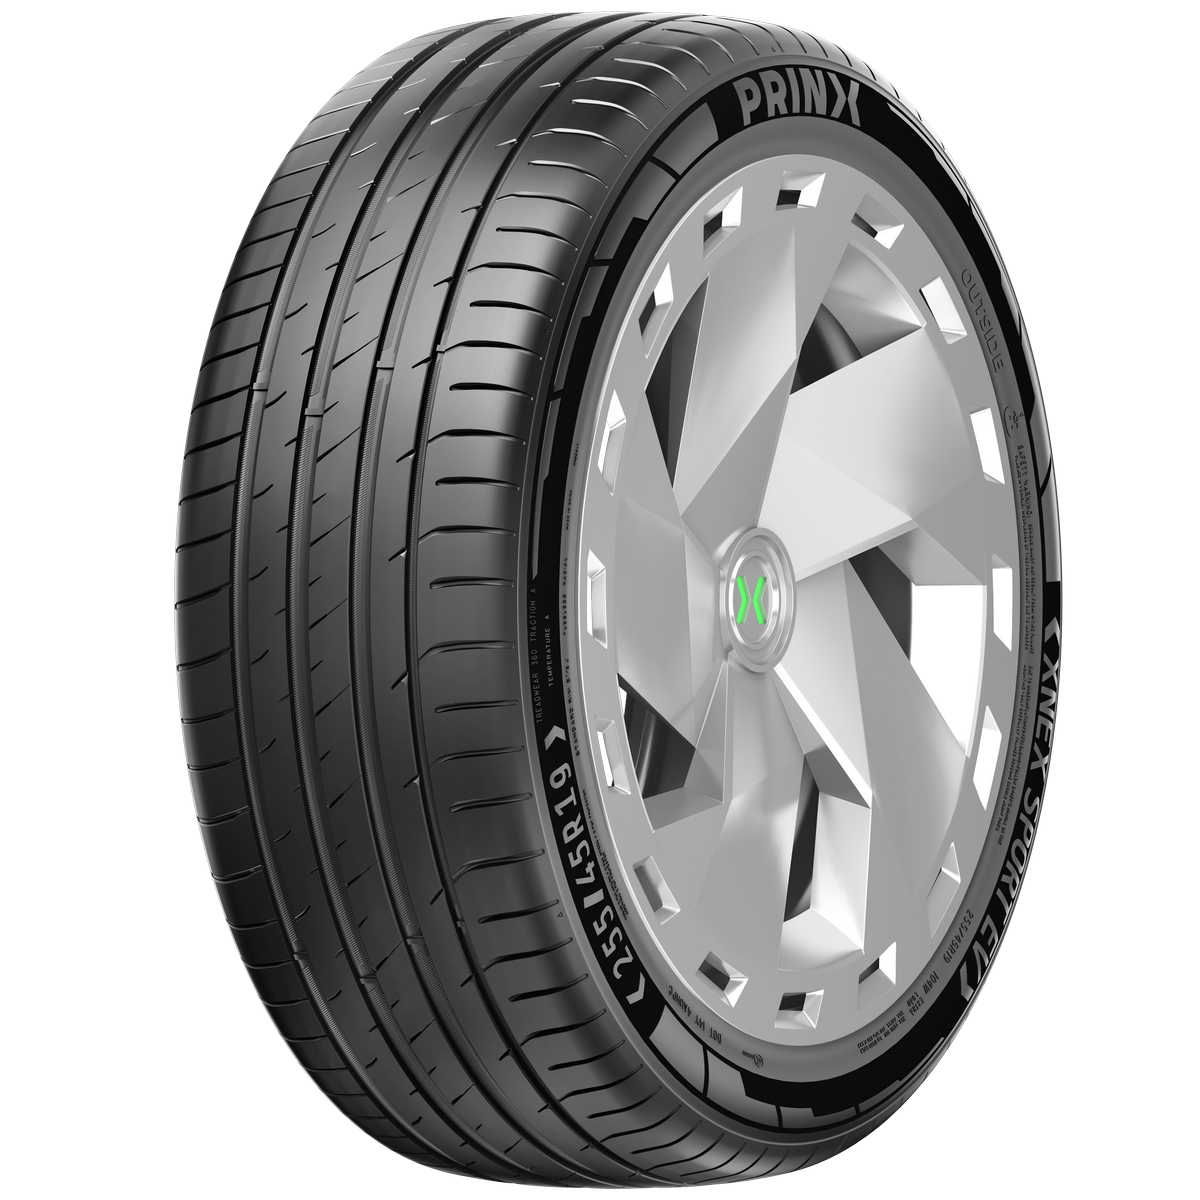 Prinx presenta due pneumatici per auto elettriche e un 4 stagioni per  vetture standard 